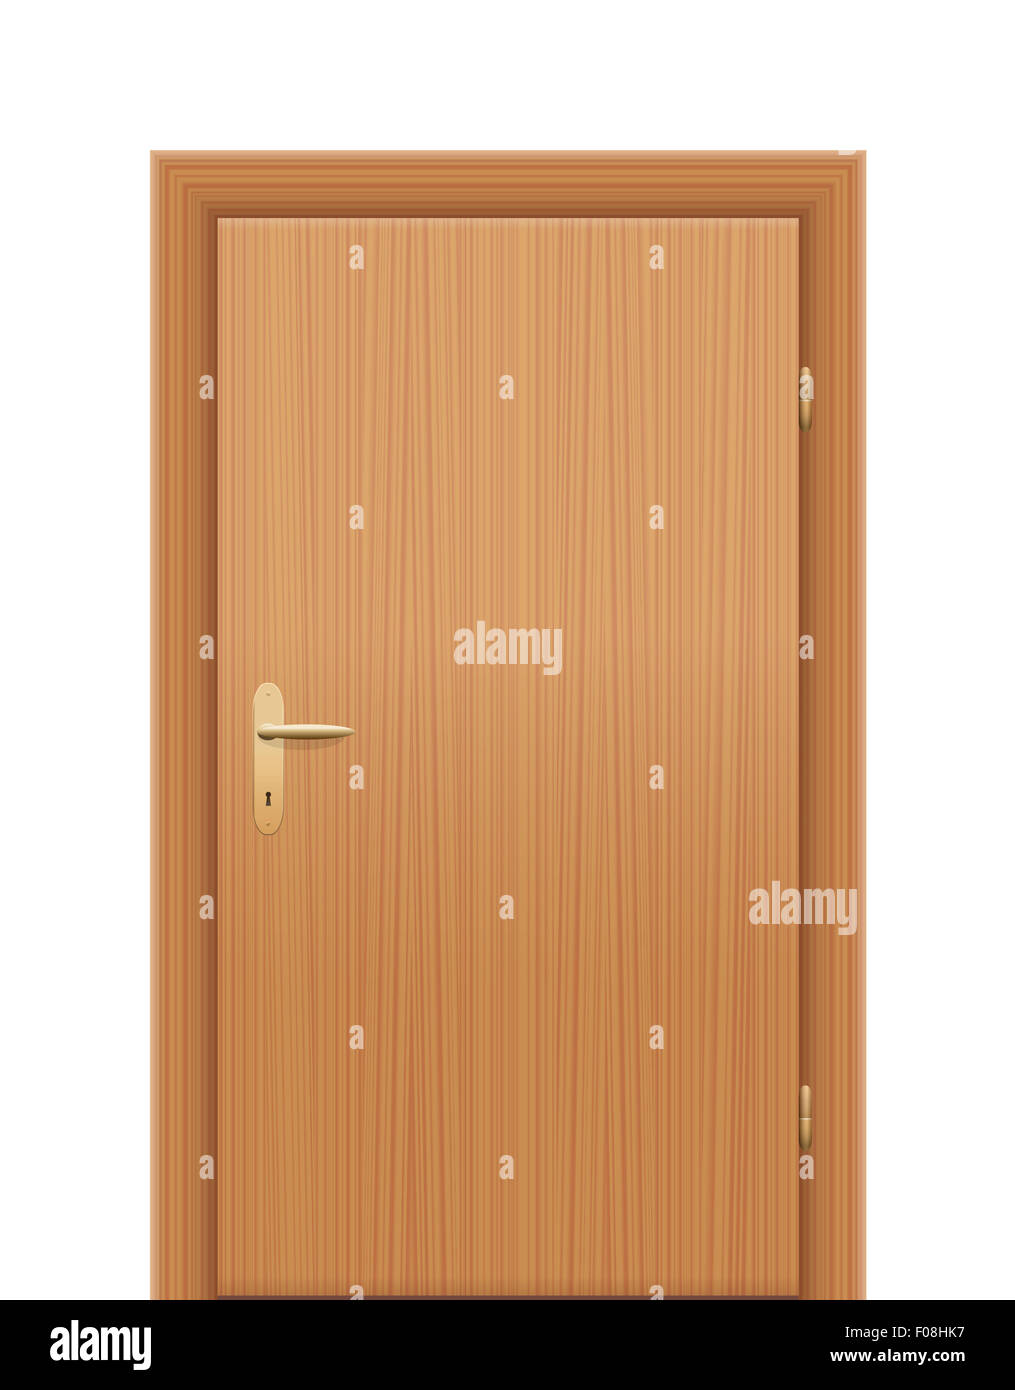 Hölzerne Tür - als Rechte Hand rückwärts geöffnet werden. Abbildung auf weißem Hintergrund. Stockfoto